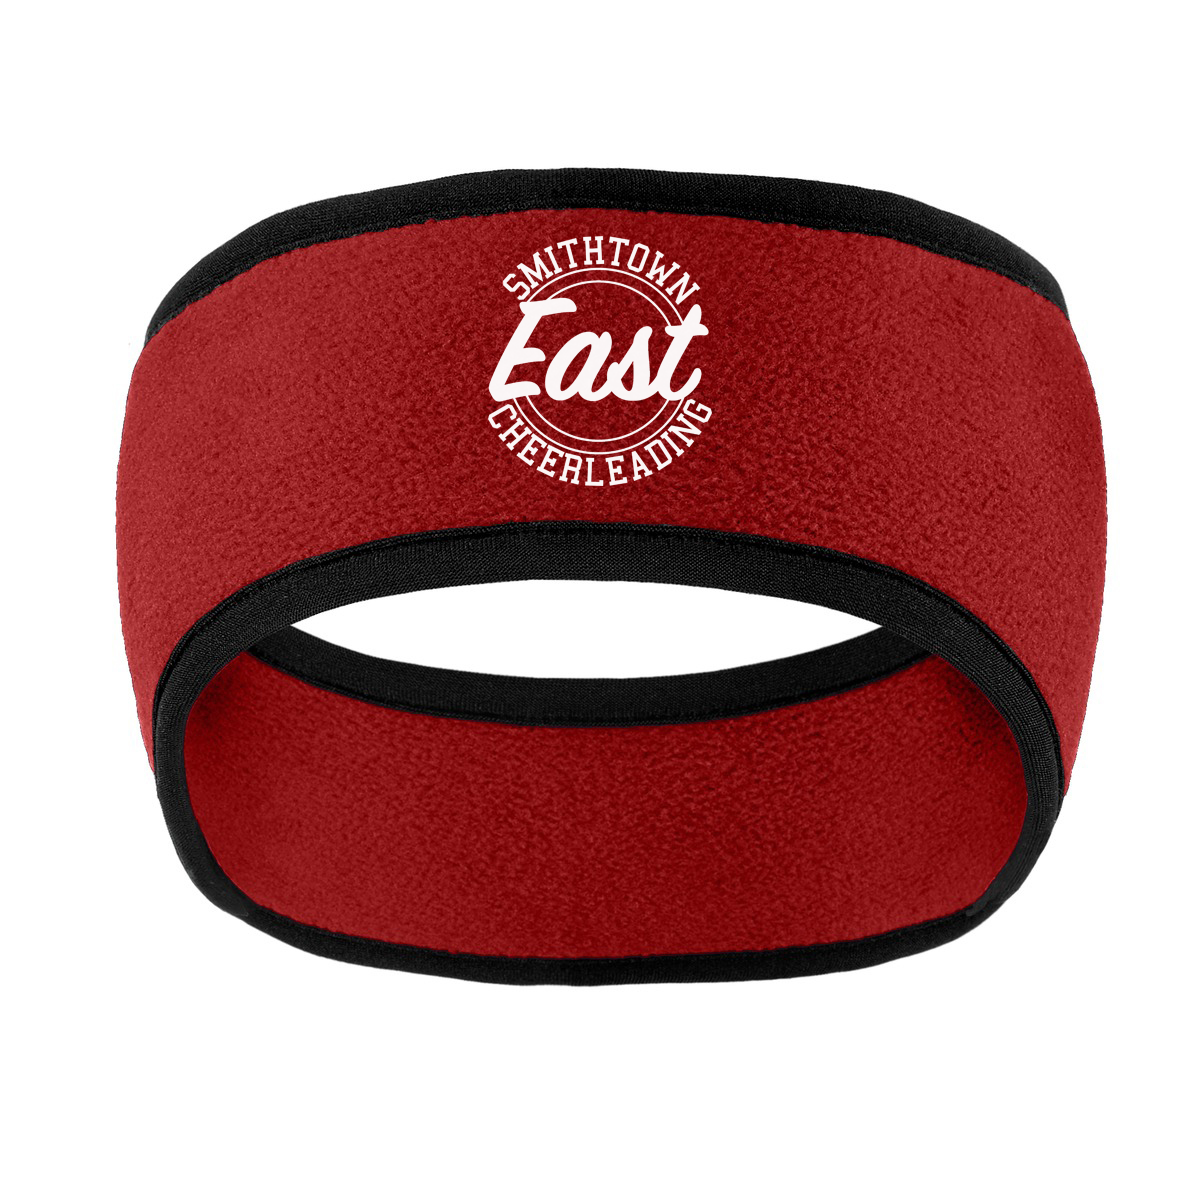 Smithtown East Cheer Two-Color Fleece Headband